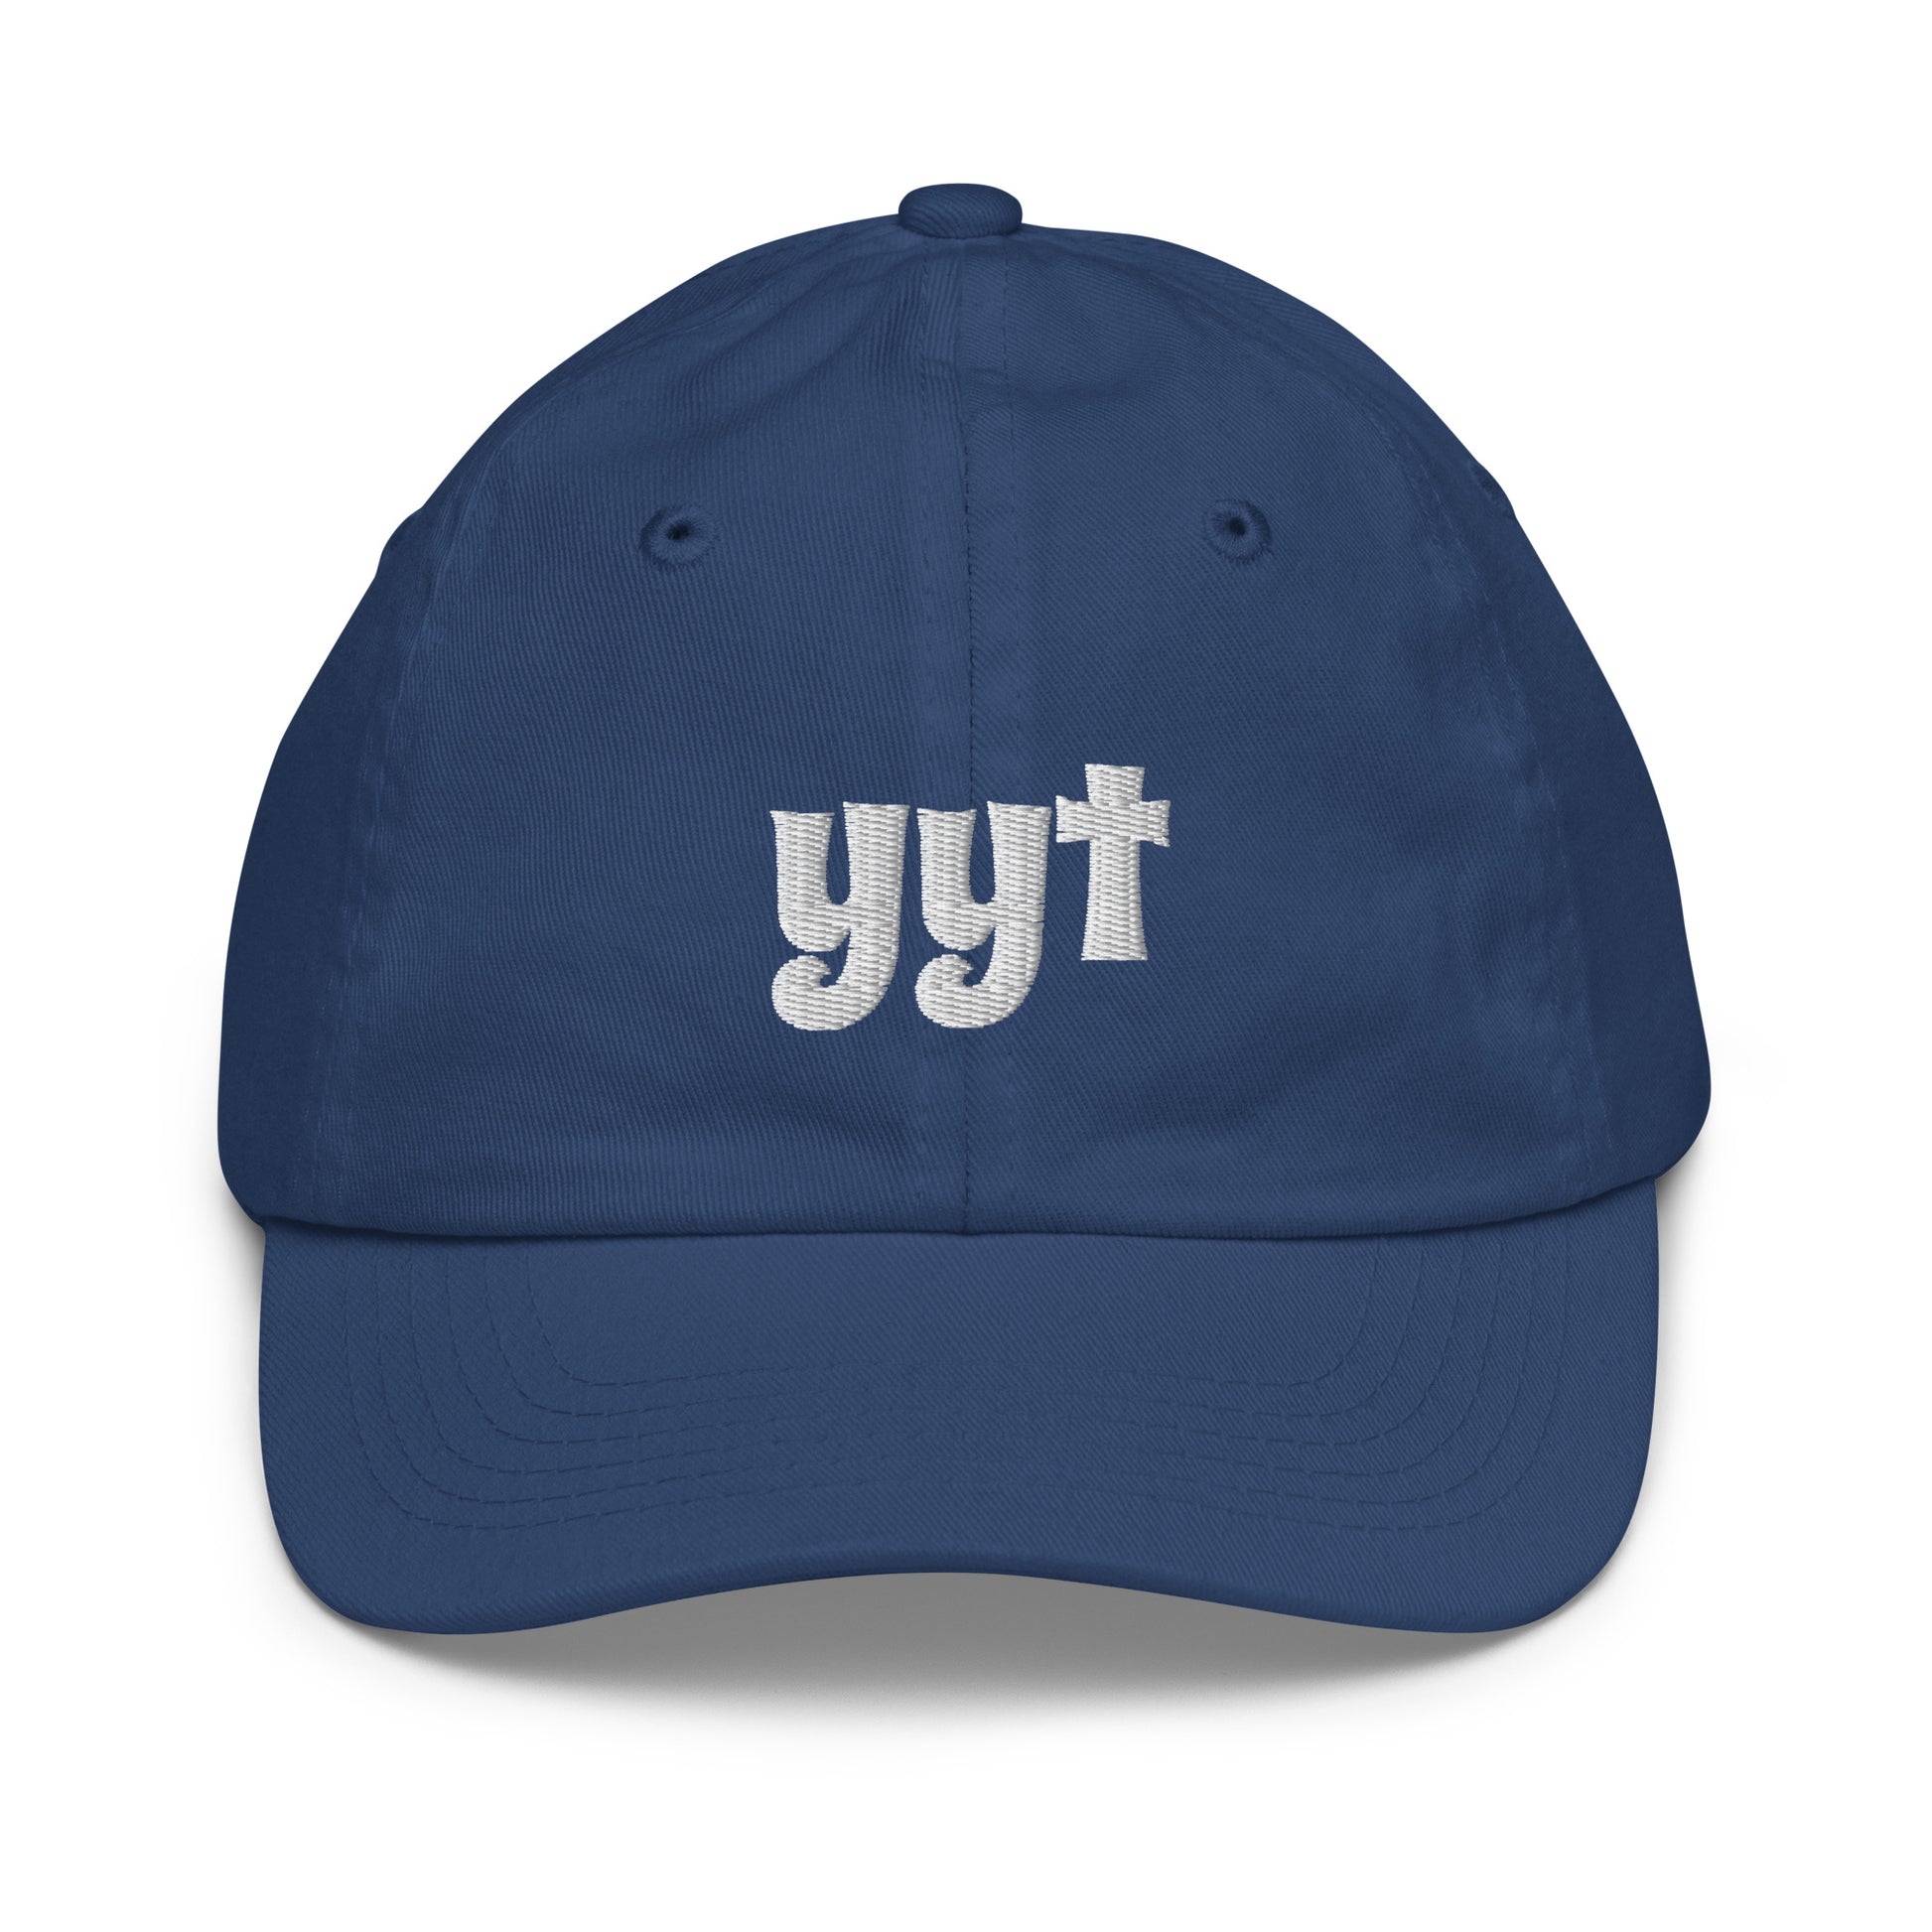 Groovy Kid's Baseball Cap - White • YYT St. John's • YHM Designs - Image 15